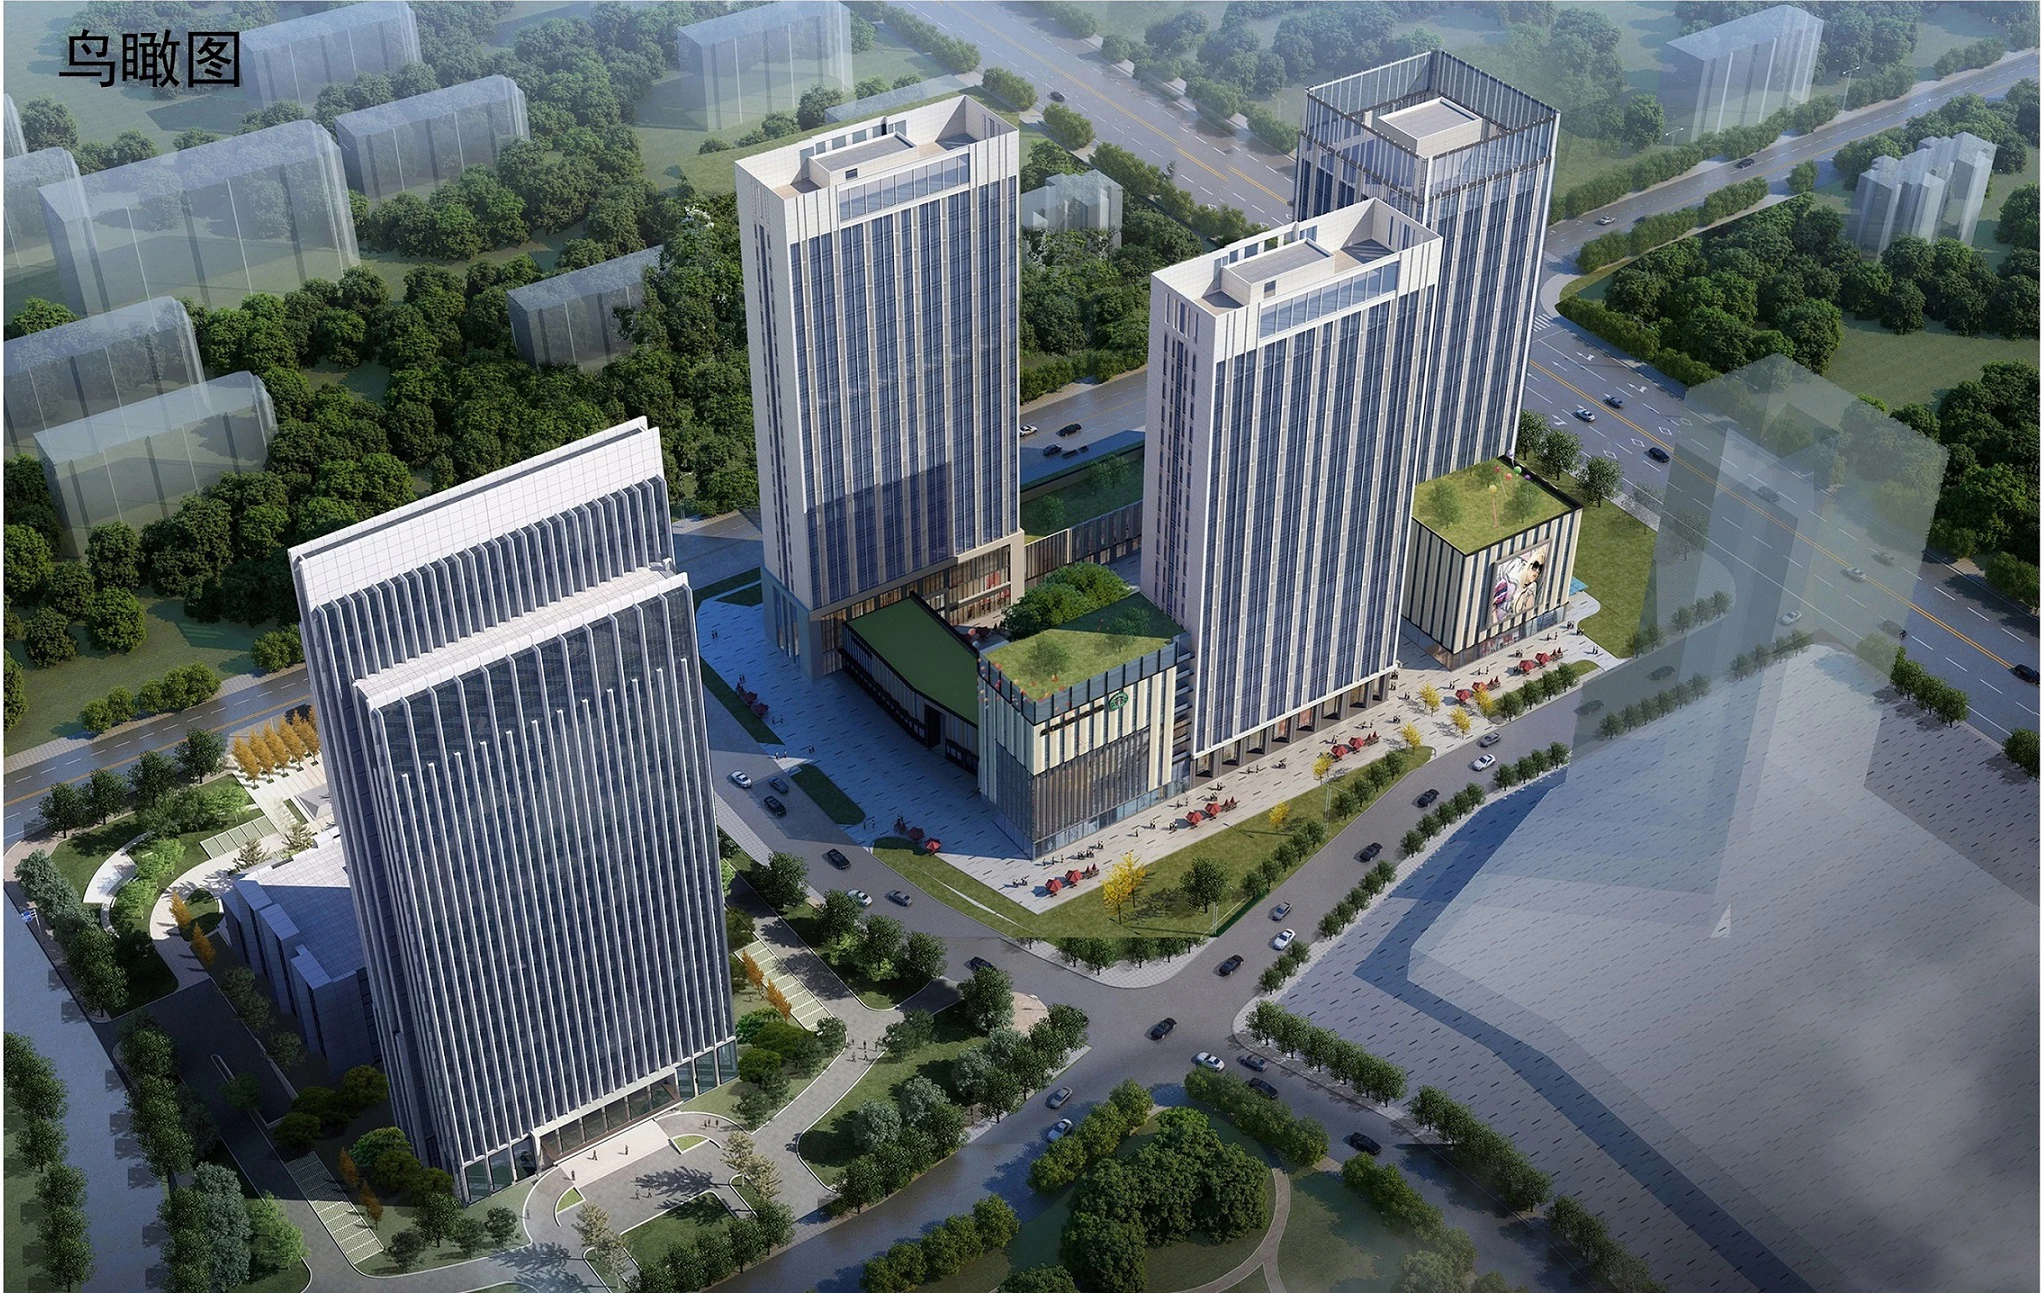 裕昌·聊城国际金融中心A区规划公示 规划四栋办公楼